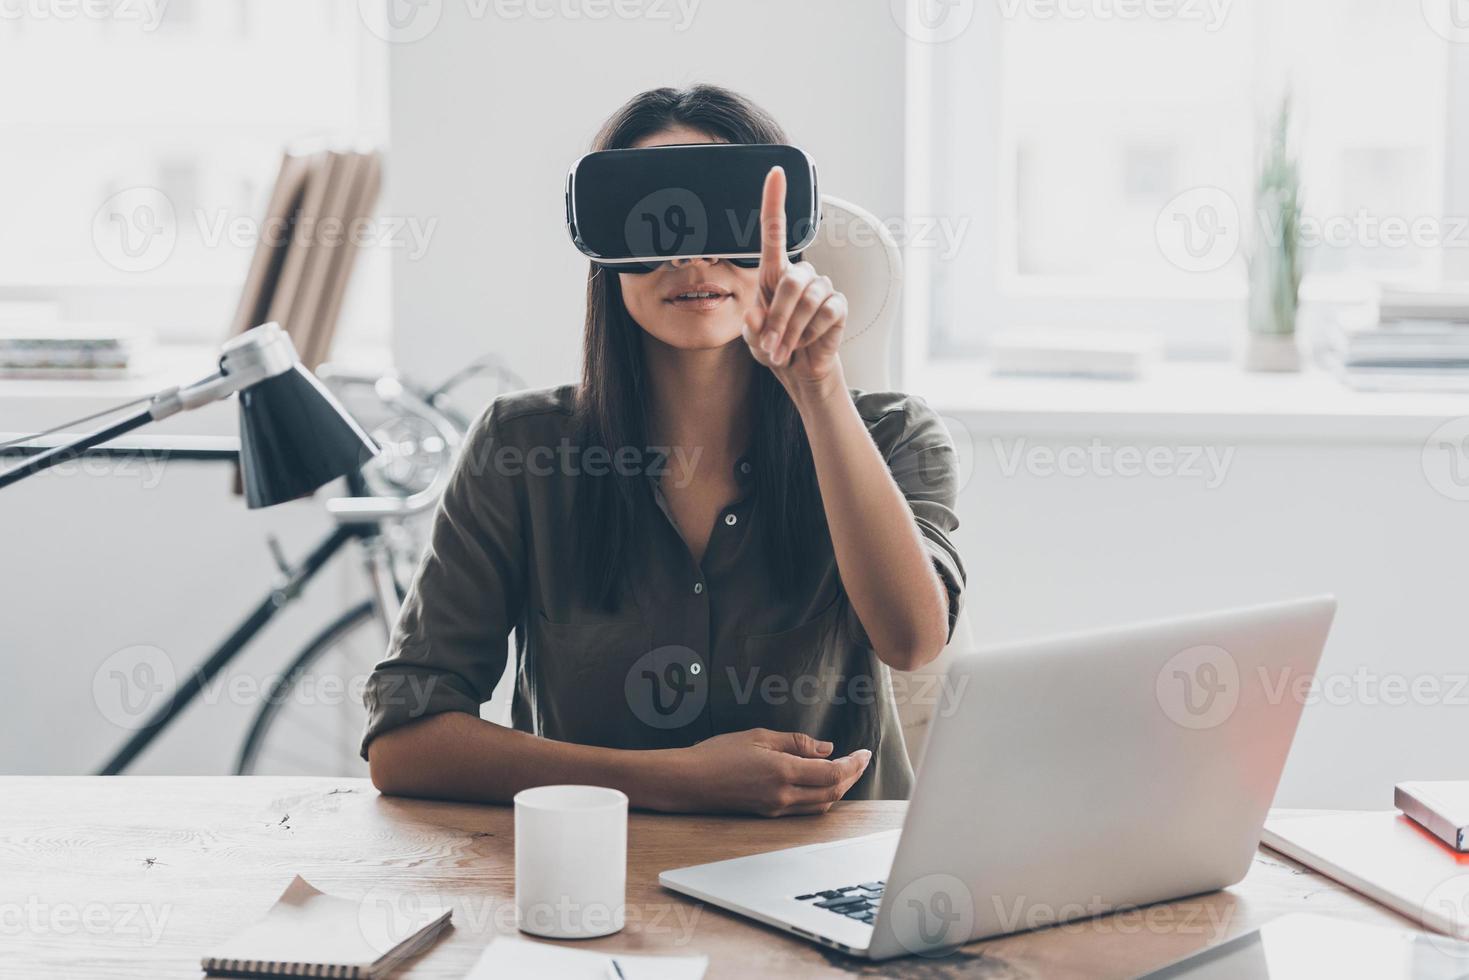 vr teknik. självsäker ung kvinna i virtuell verklighet headsetet pekande i de luft medan Sammanträde på henne arbetssätt plats i kontor foto